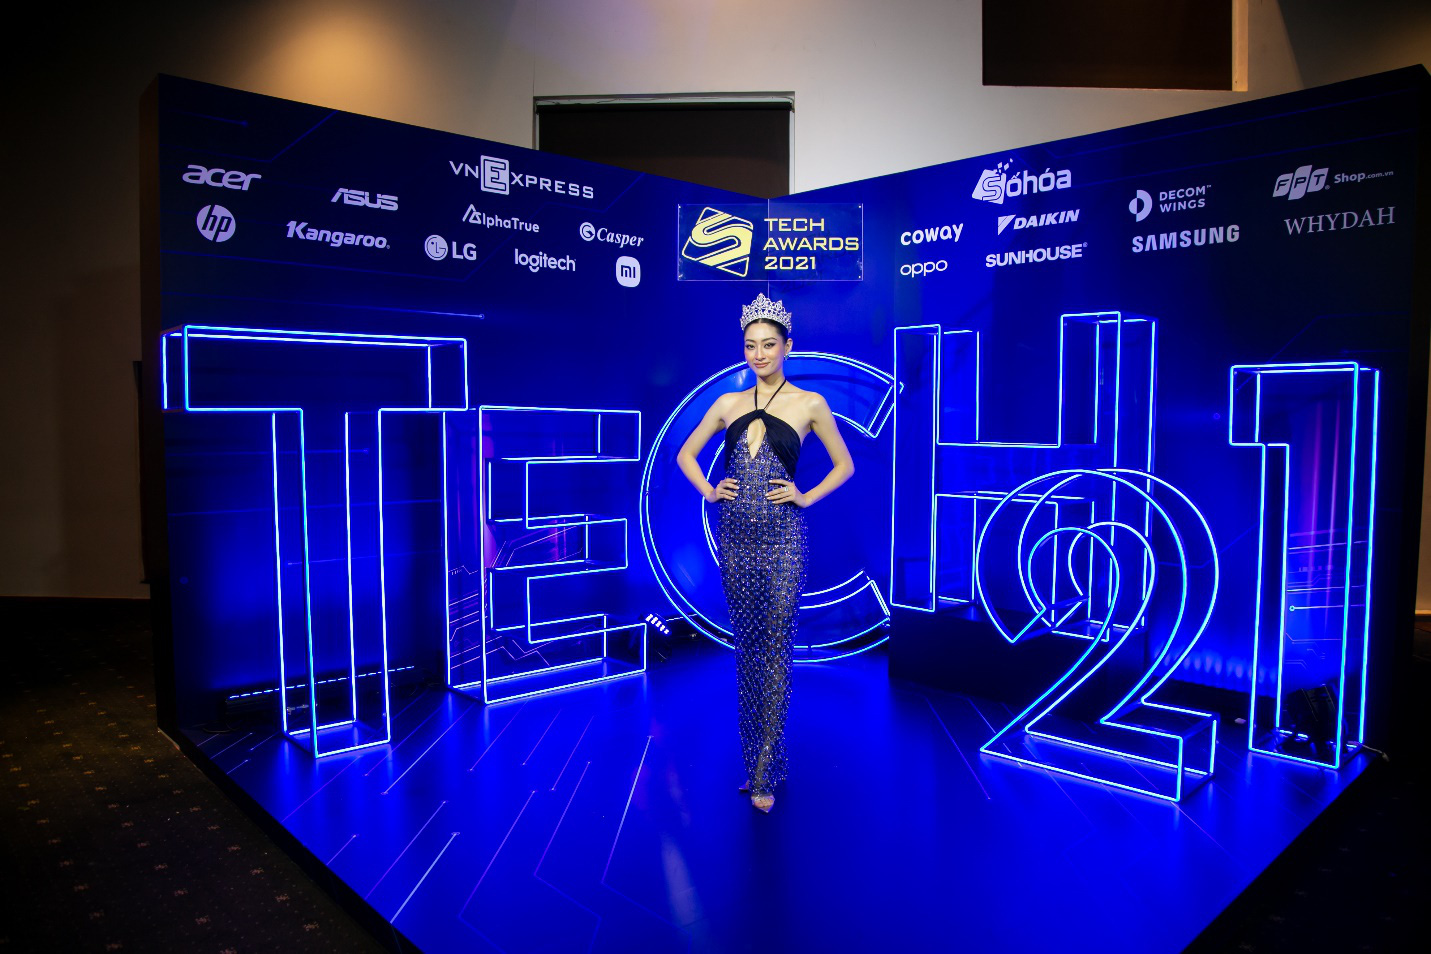 Hoa hậu Lương Thùy Linh rạng rỡ tại sự kiện công nghệ Tech Award 2021 - Ảnh 1.